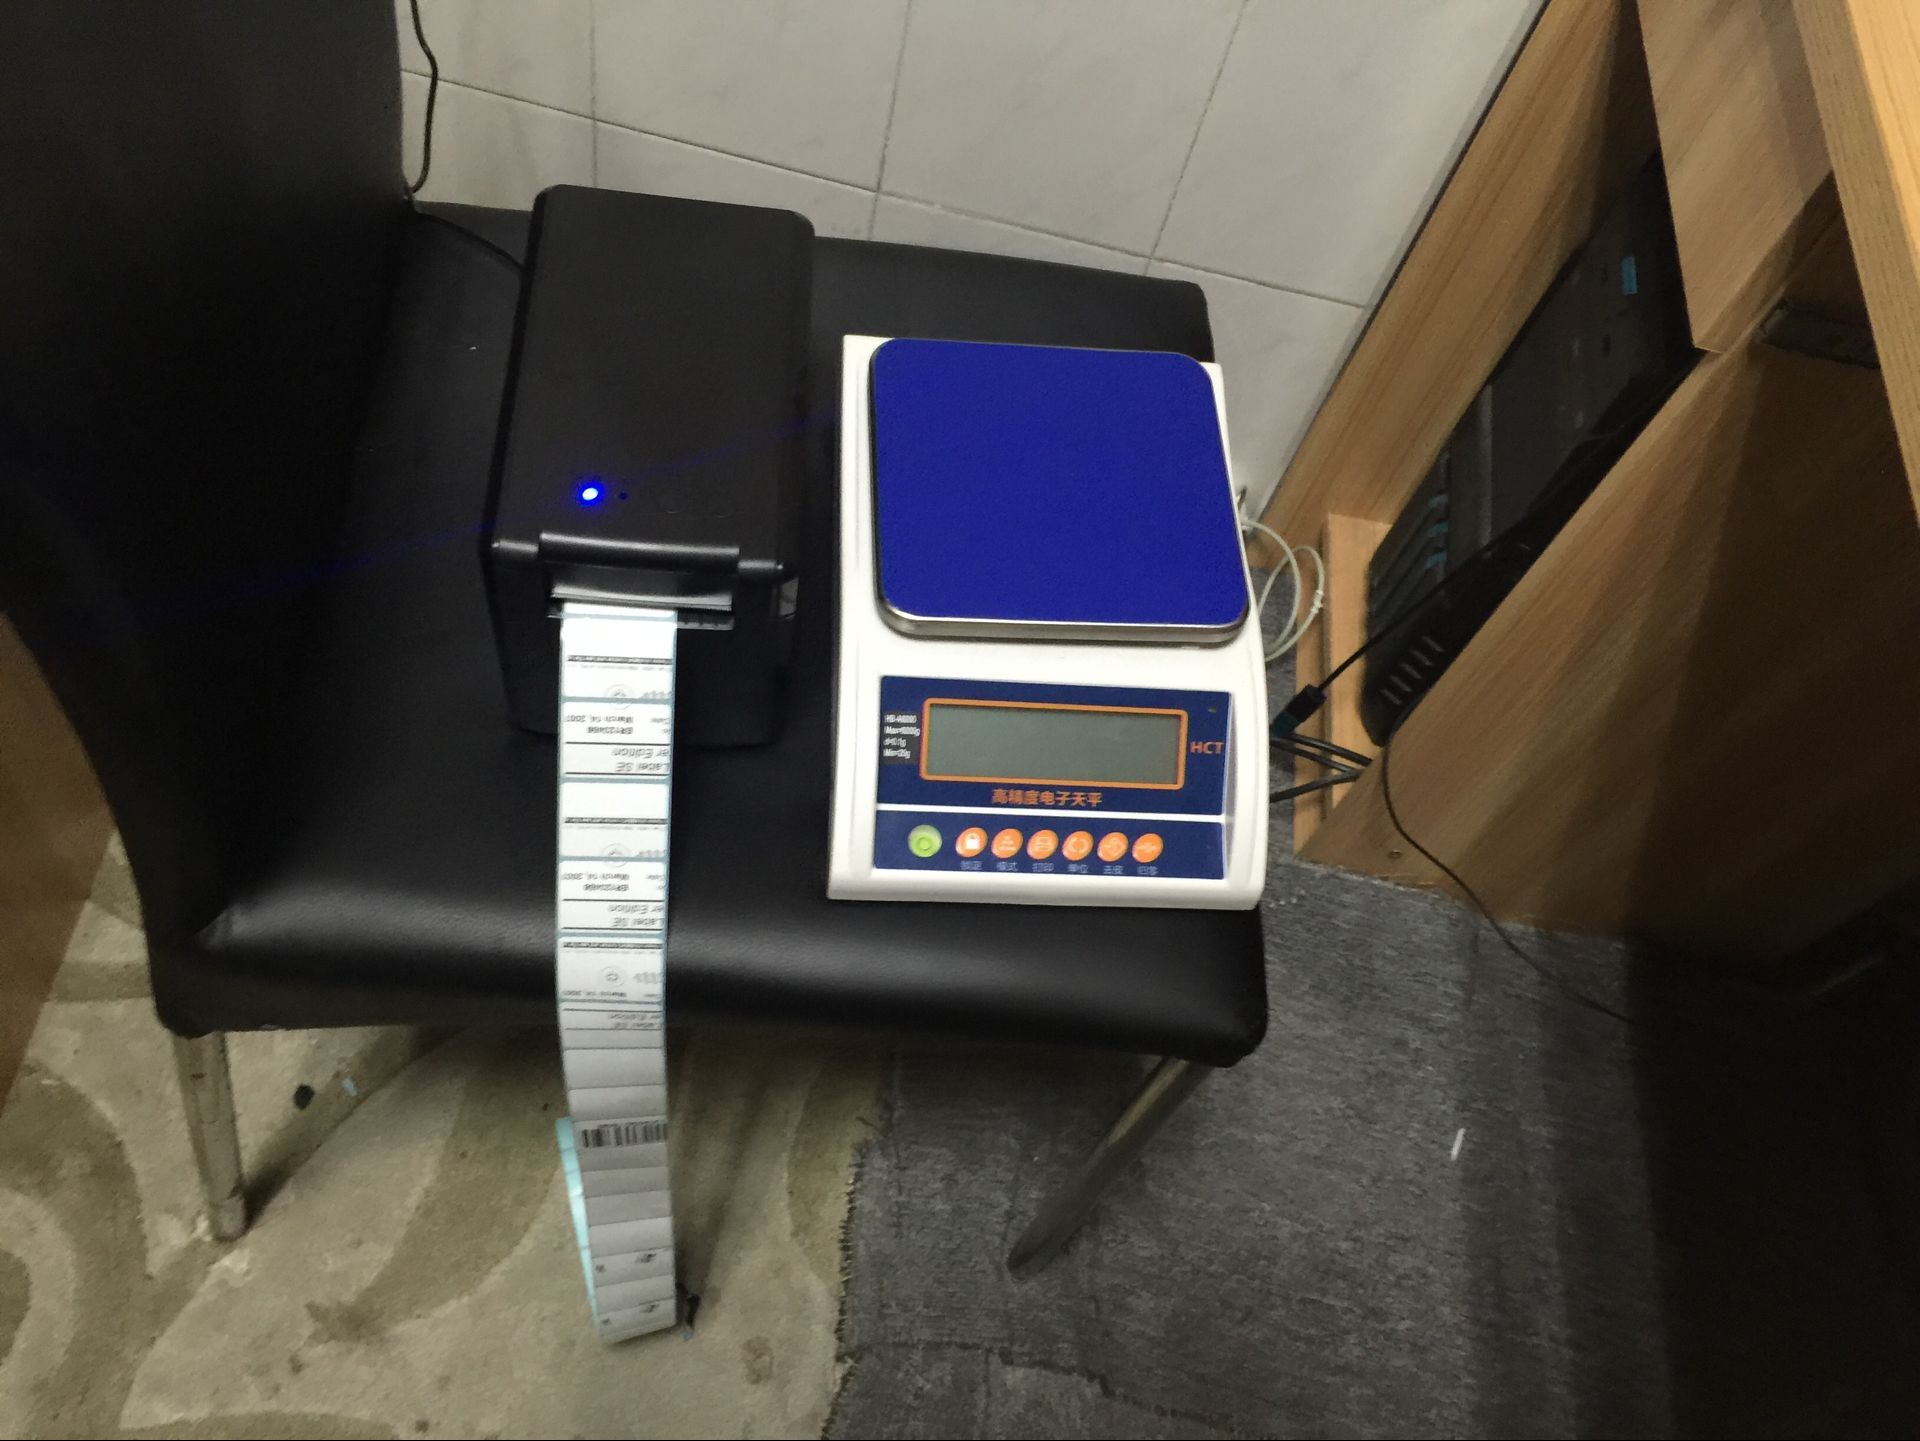 出口电子秤 港斤 台斤 英磅 磅 市斤 公斤 英文版电子磅 OZ 克拉 标签秤